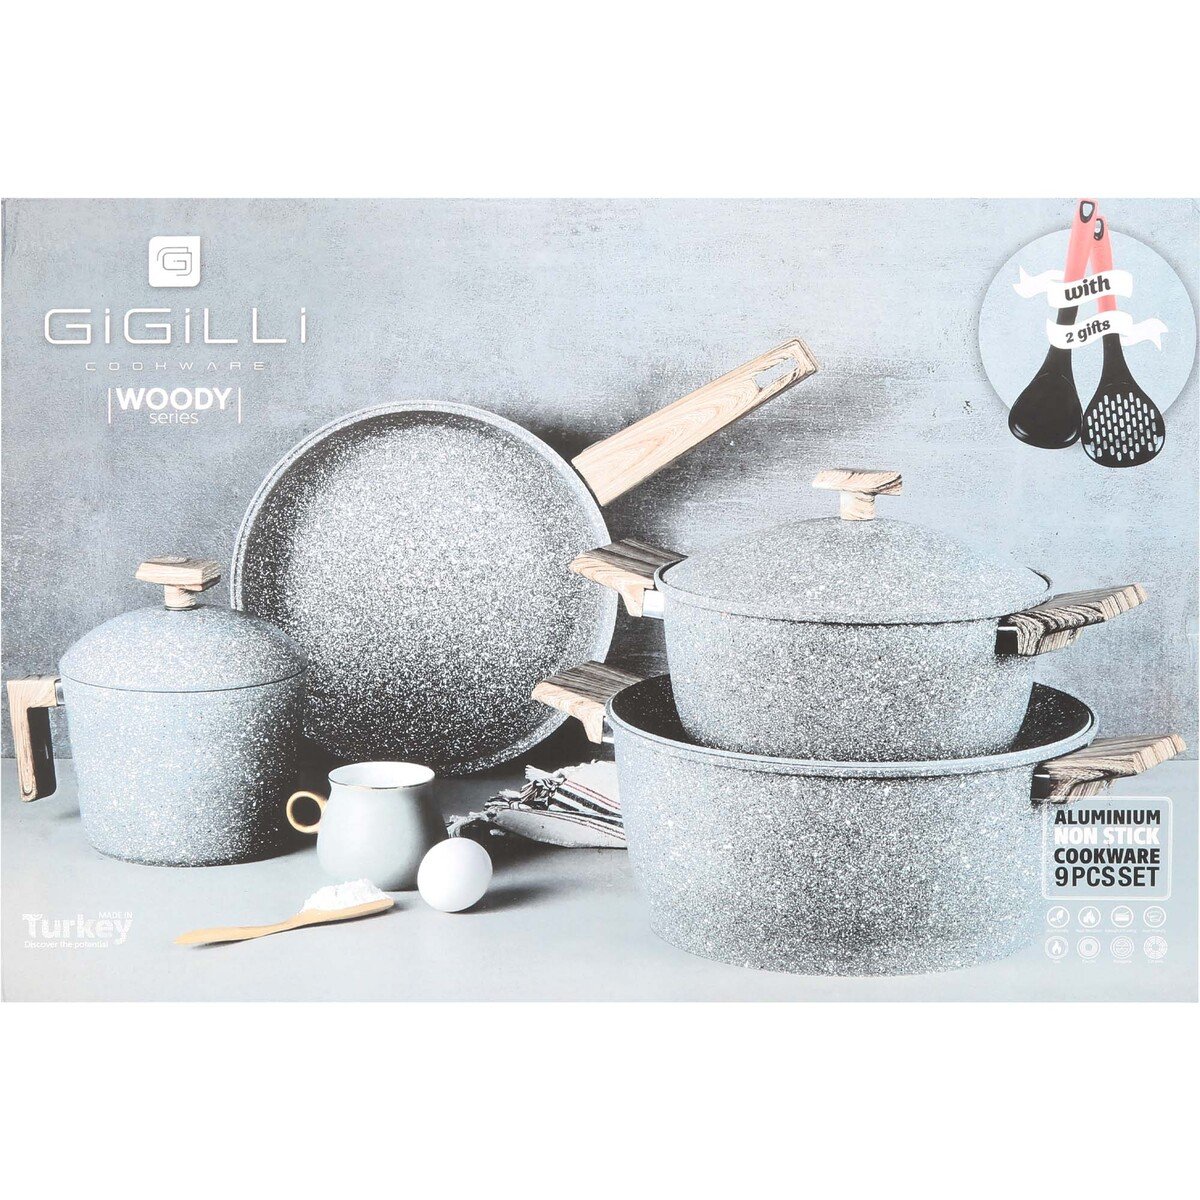 Gigillli Granite Cookware Set Woody 9pcs 1105 Gray